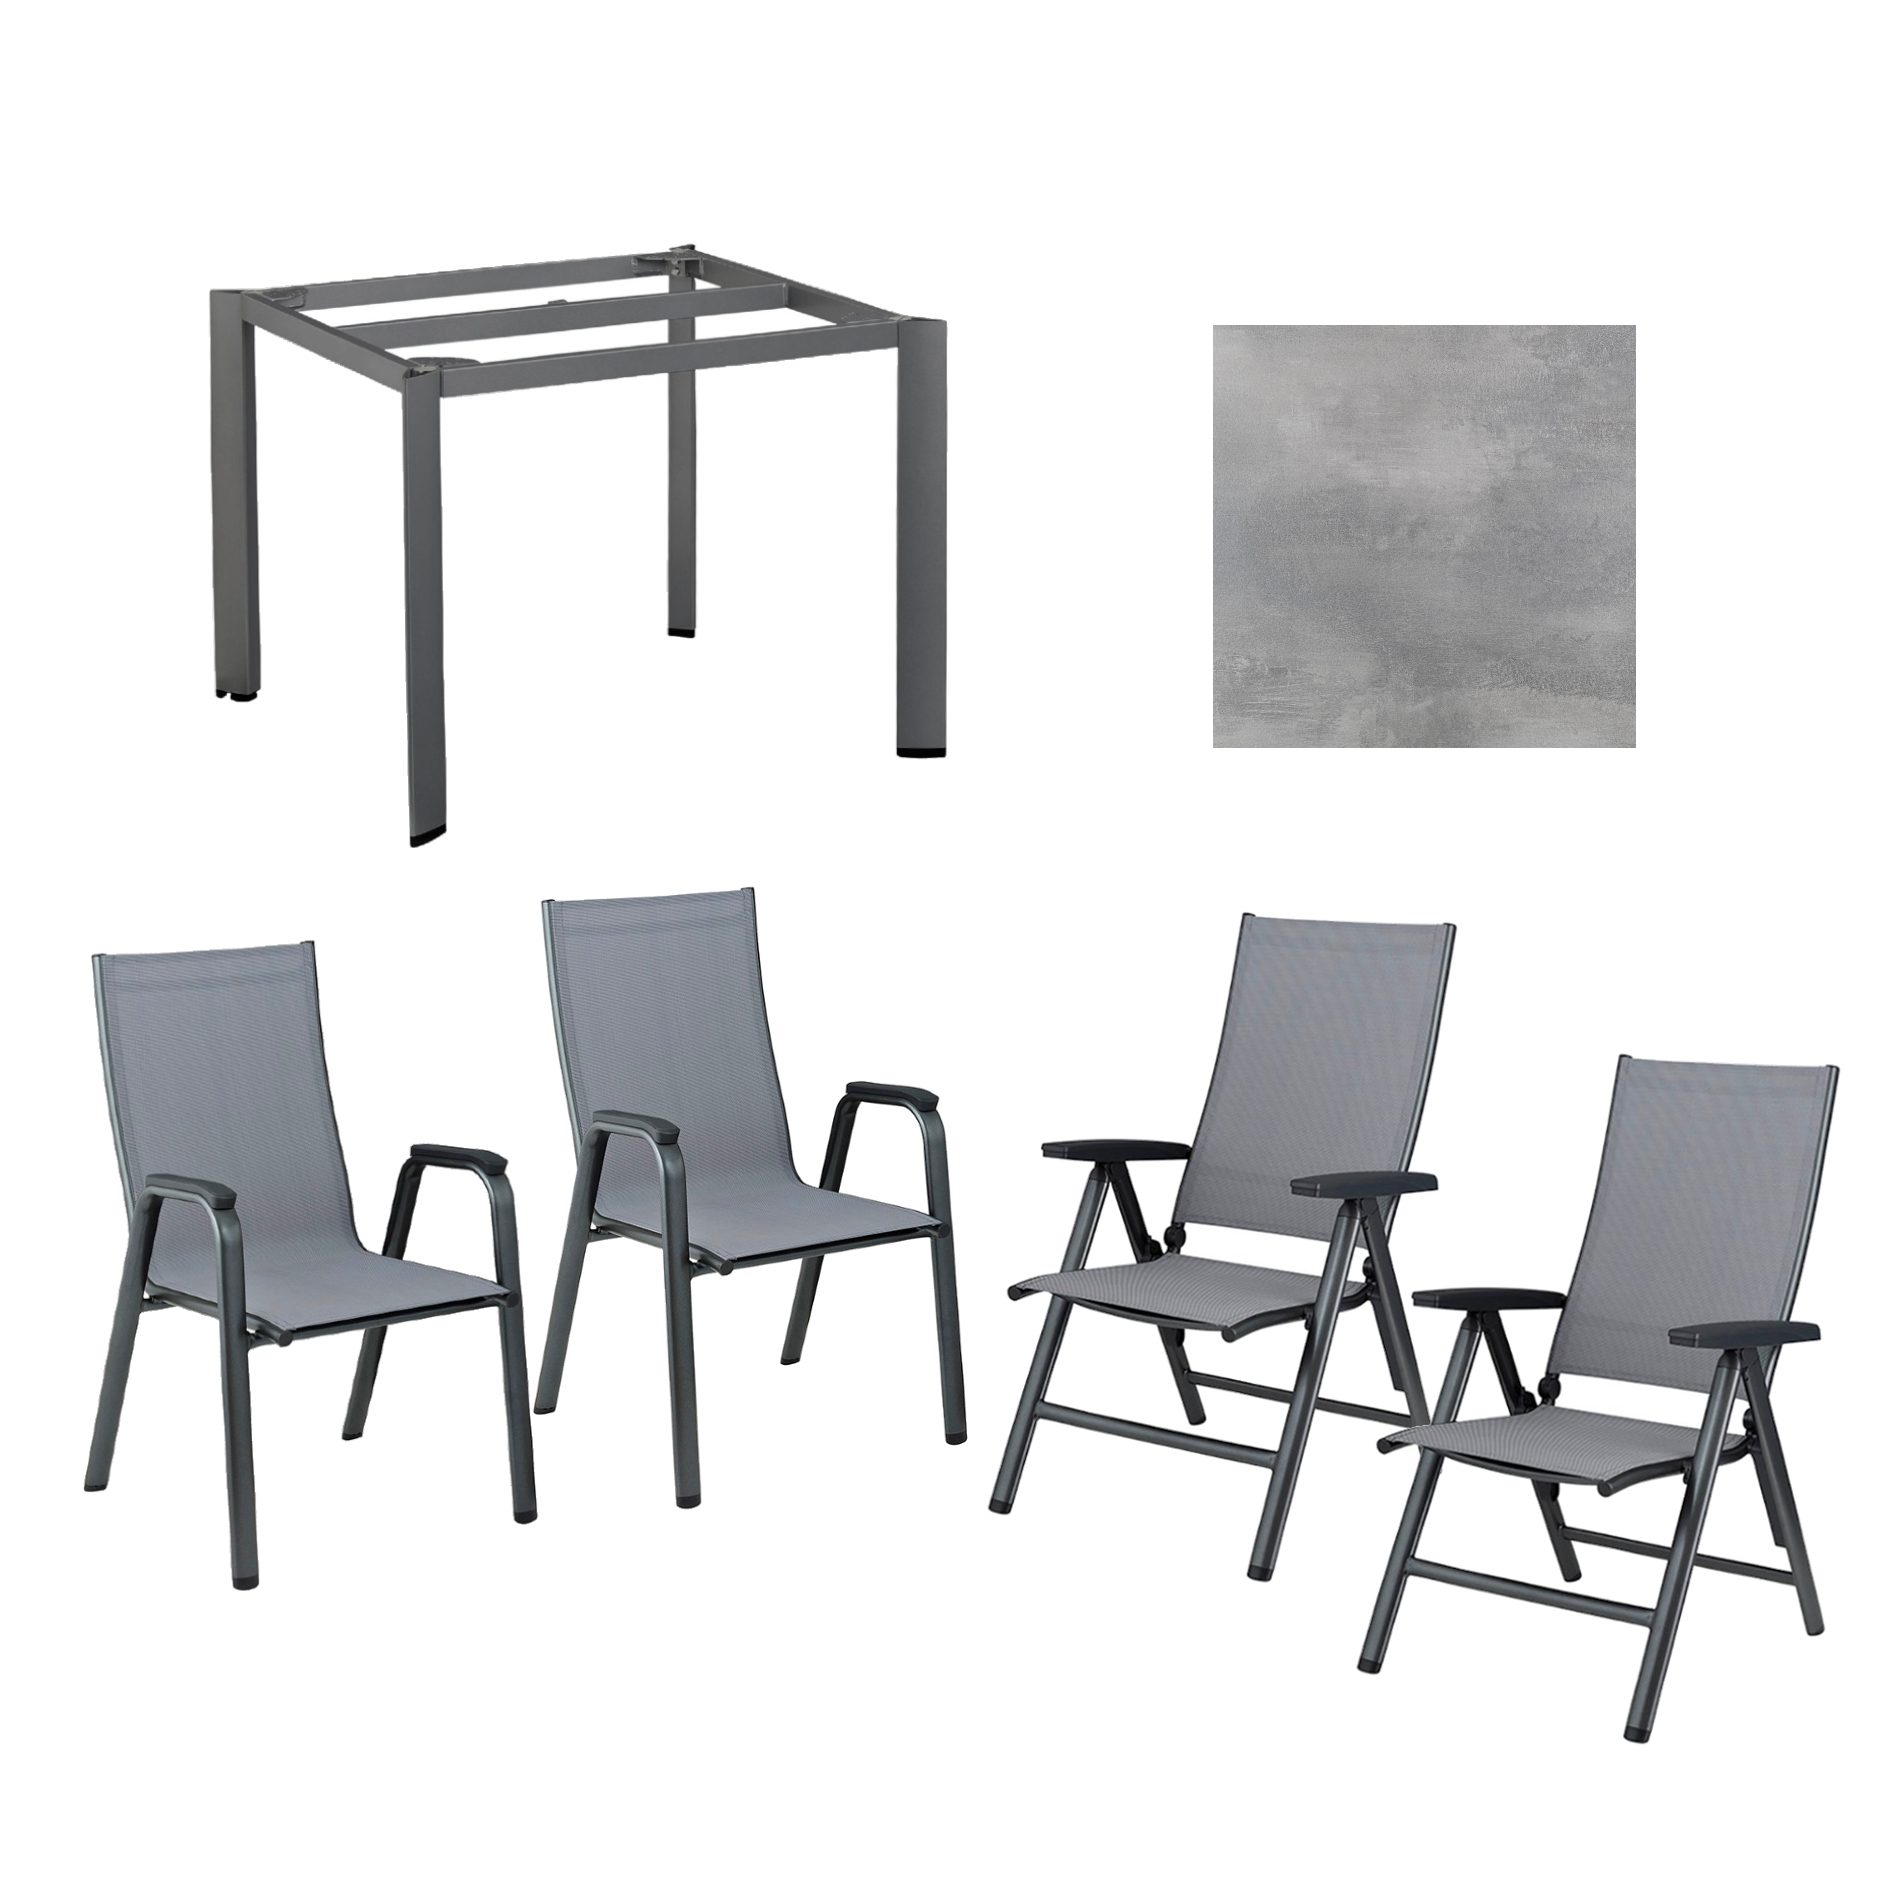 Kettler Gartenmöbel-Set mit "Cirrus" Klapp- und Stapelsessel und "Edge" Gartentisch, Gestelle Aluminium anthrazit, Sitz Textilgewebe anthrazit-grau, Tischplatte HPL silber-grau